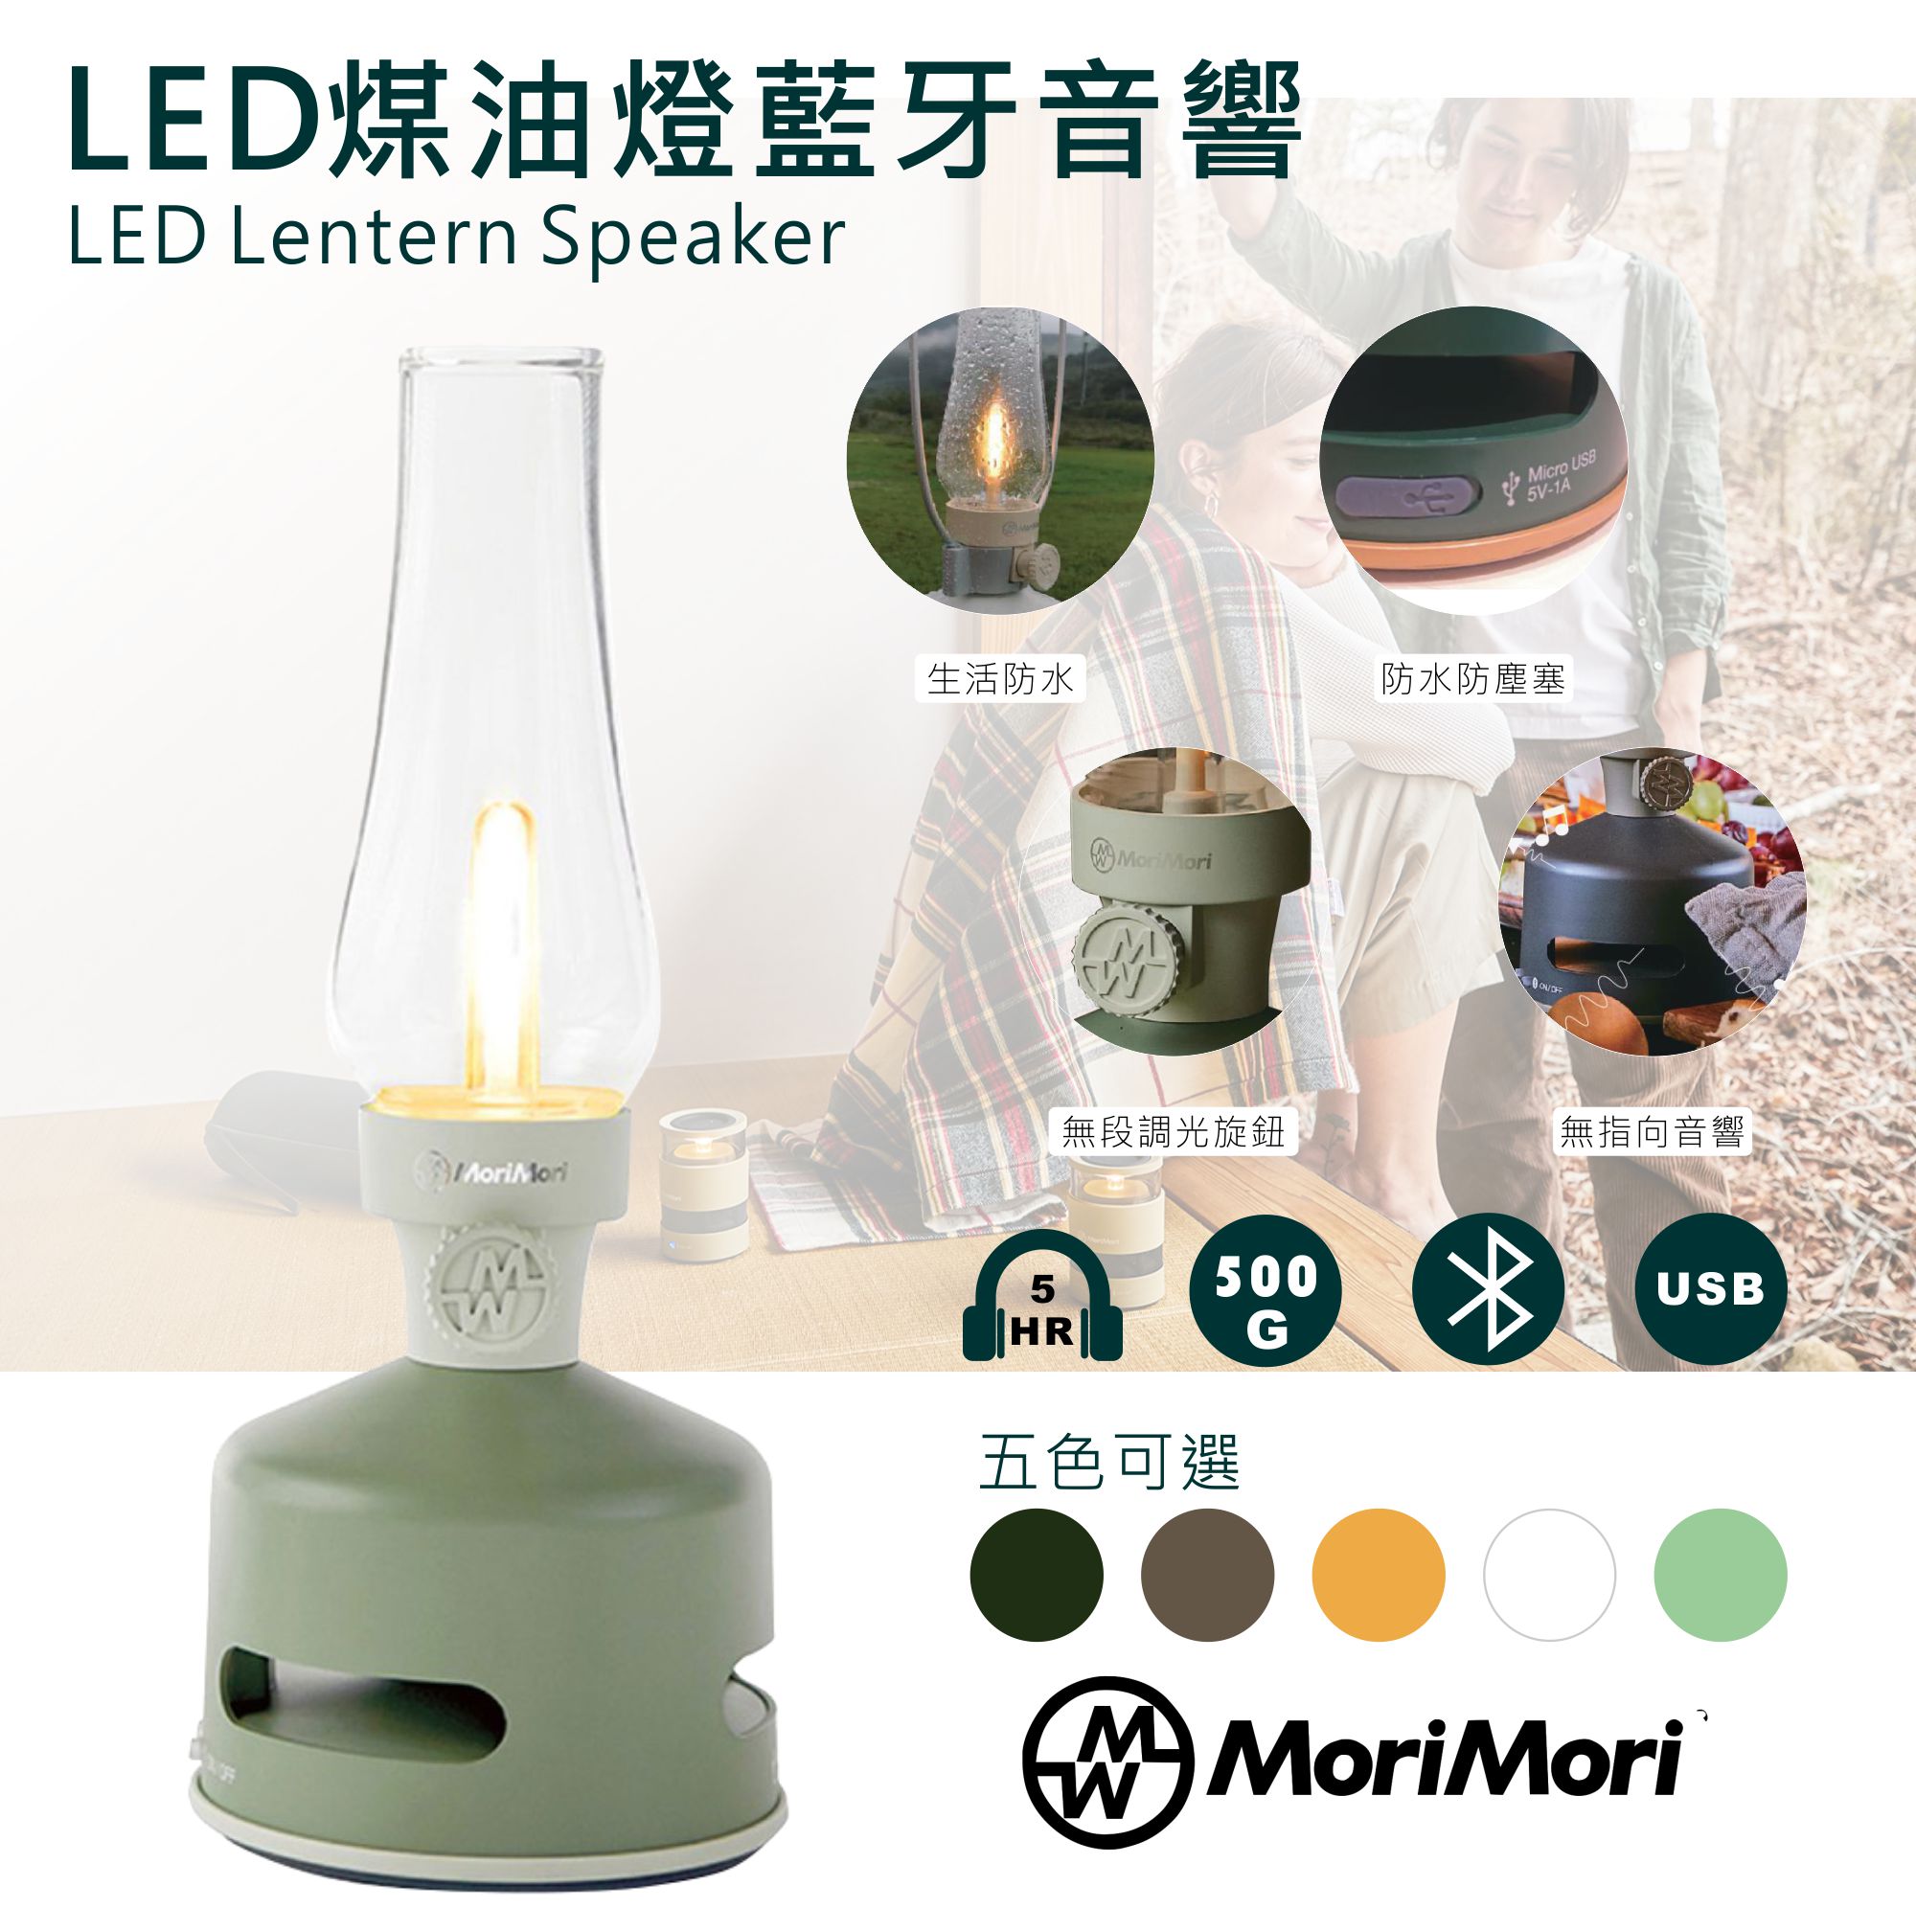 【日本】MoriMori藍芽喇叭燈(淺綠) 多功能LED燈 小夜燈 無段調光 防水 多功能音響 氣氛燈 高音質音響